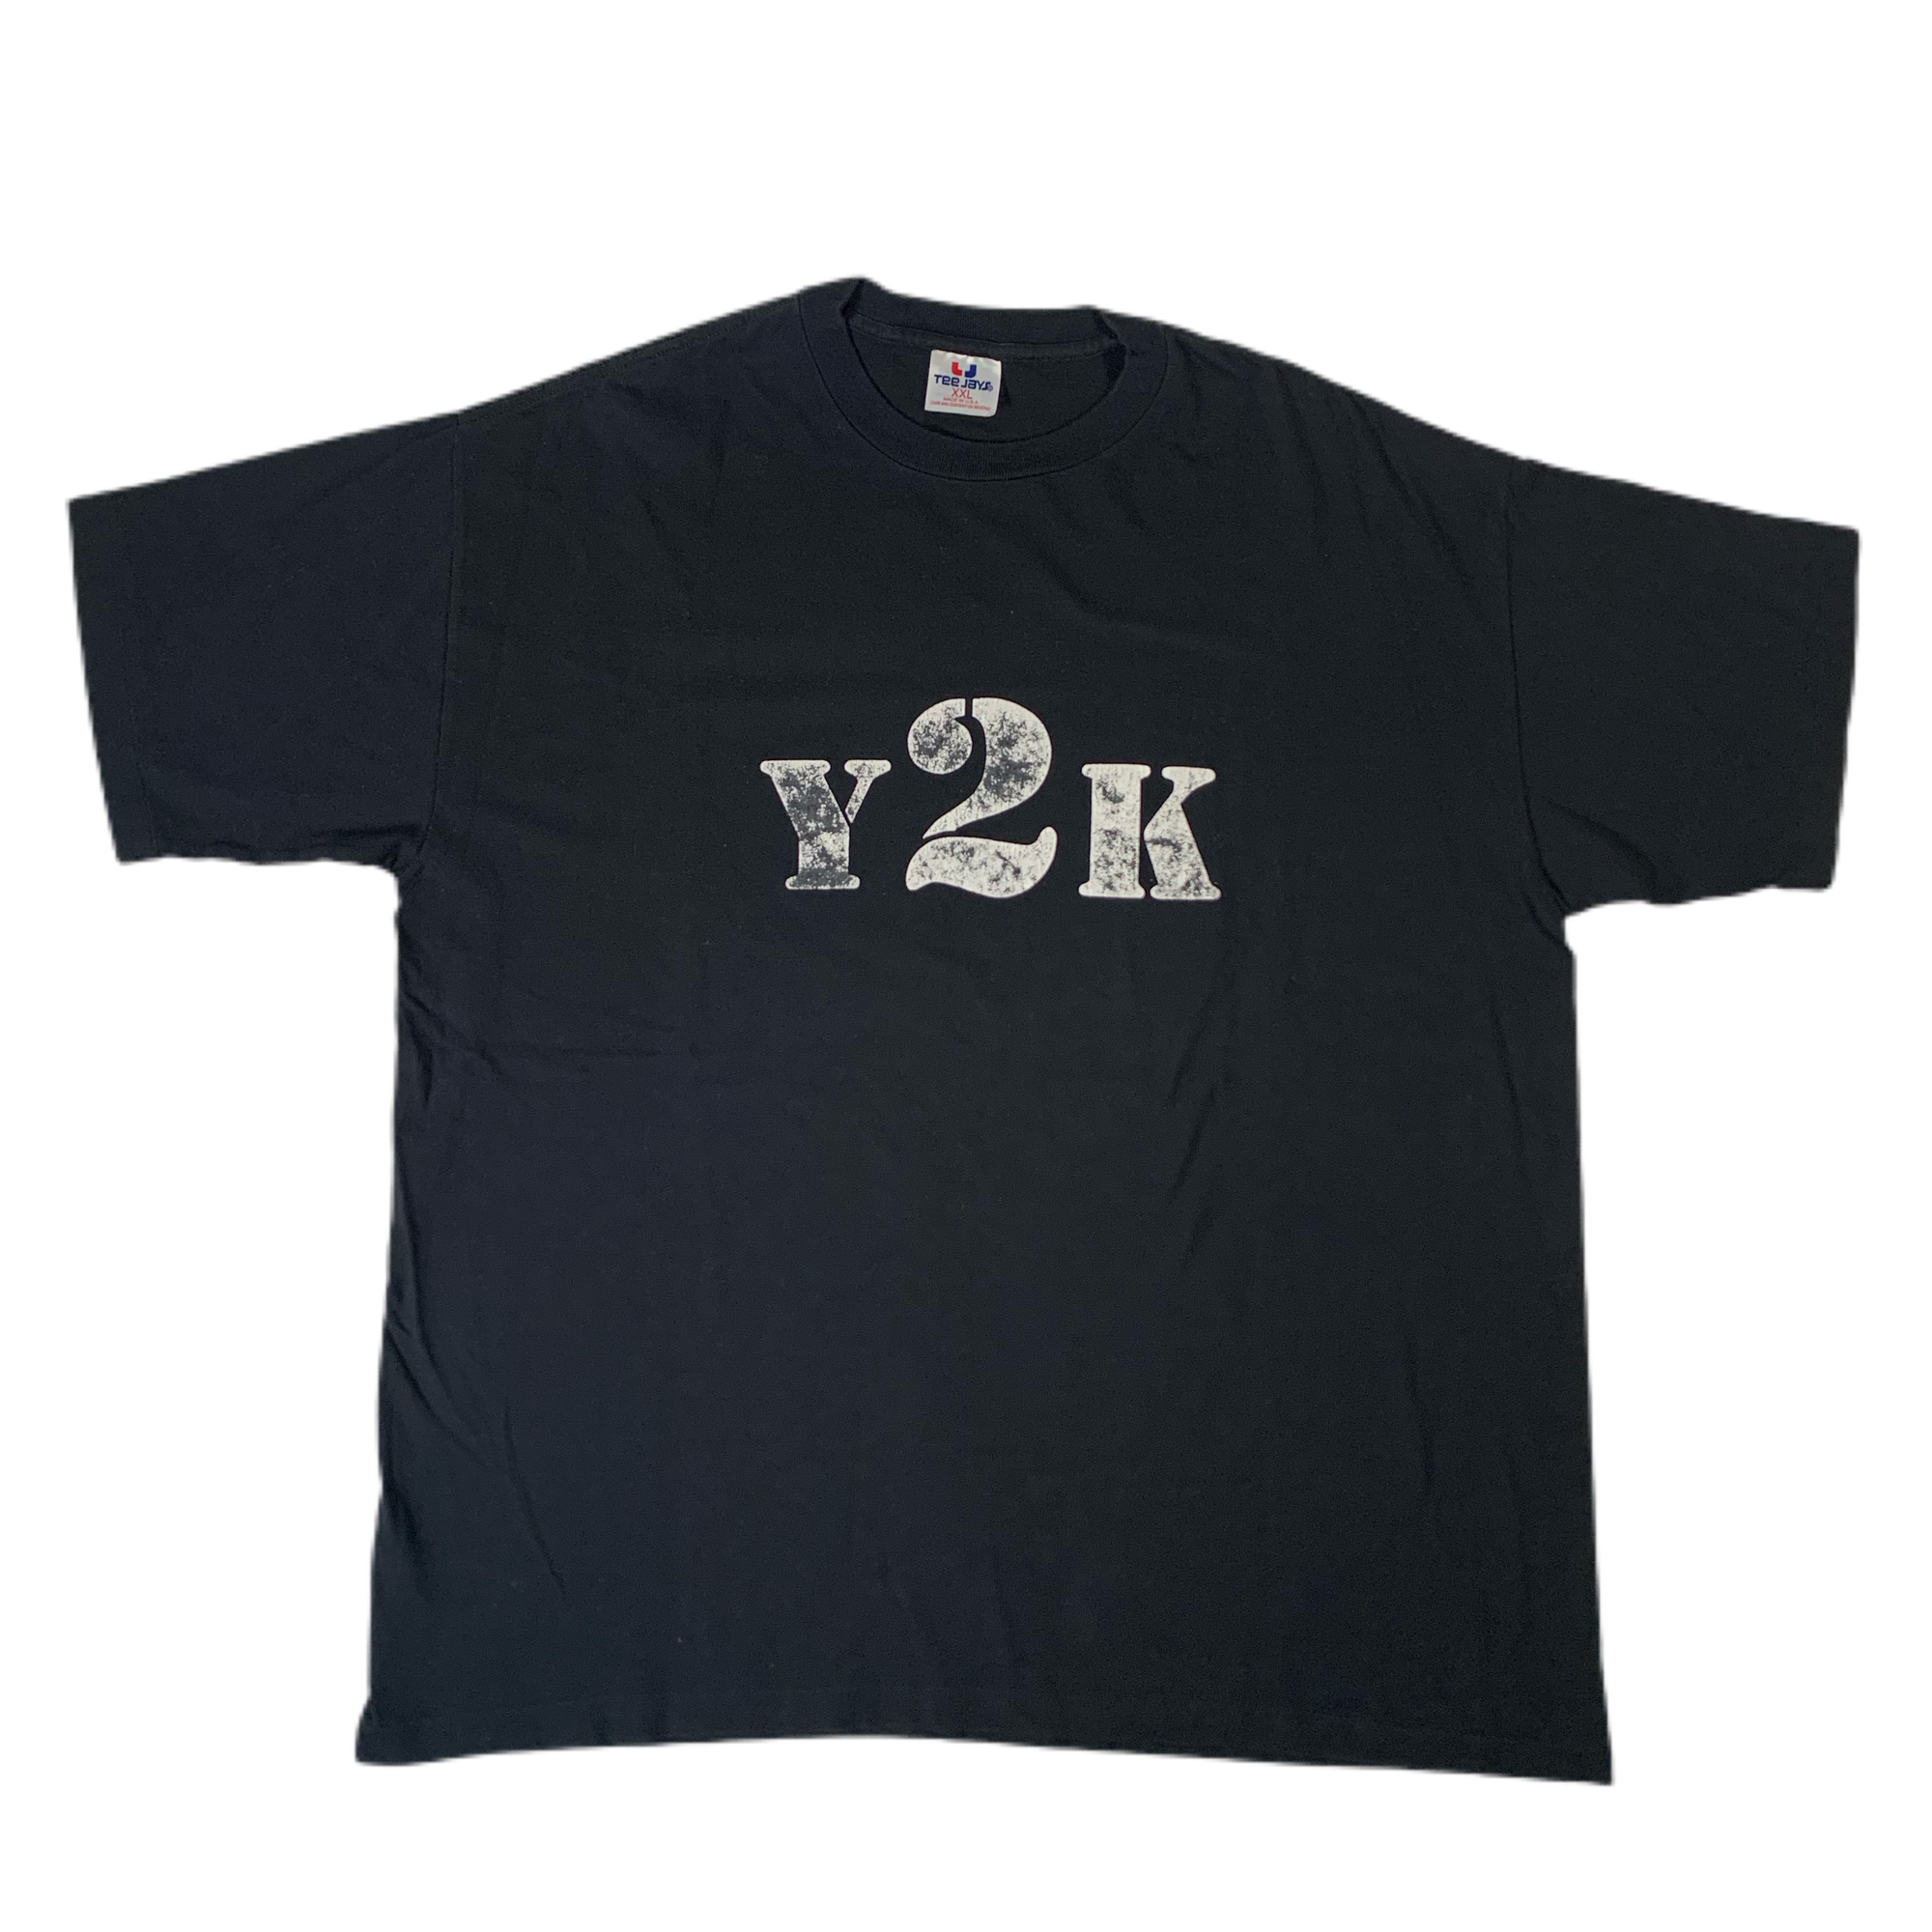 Vintage Y2K “2000” T-Shirt - jointcustodydc